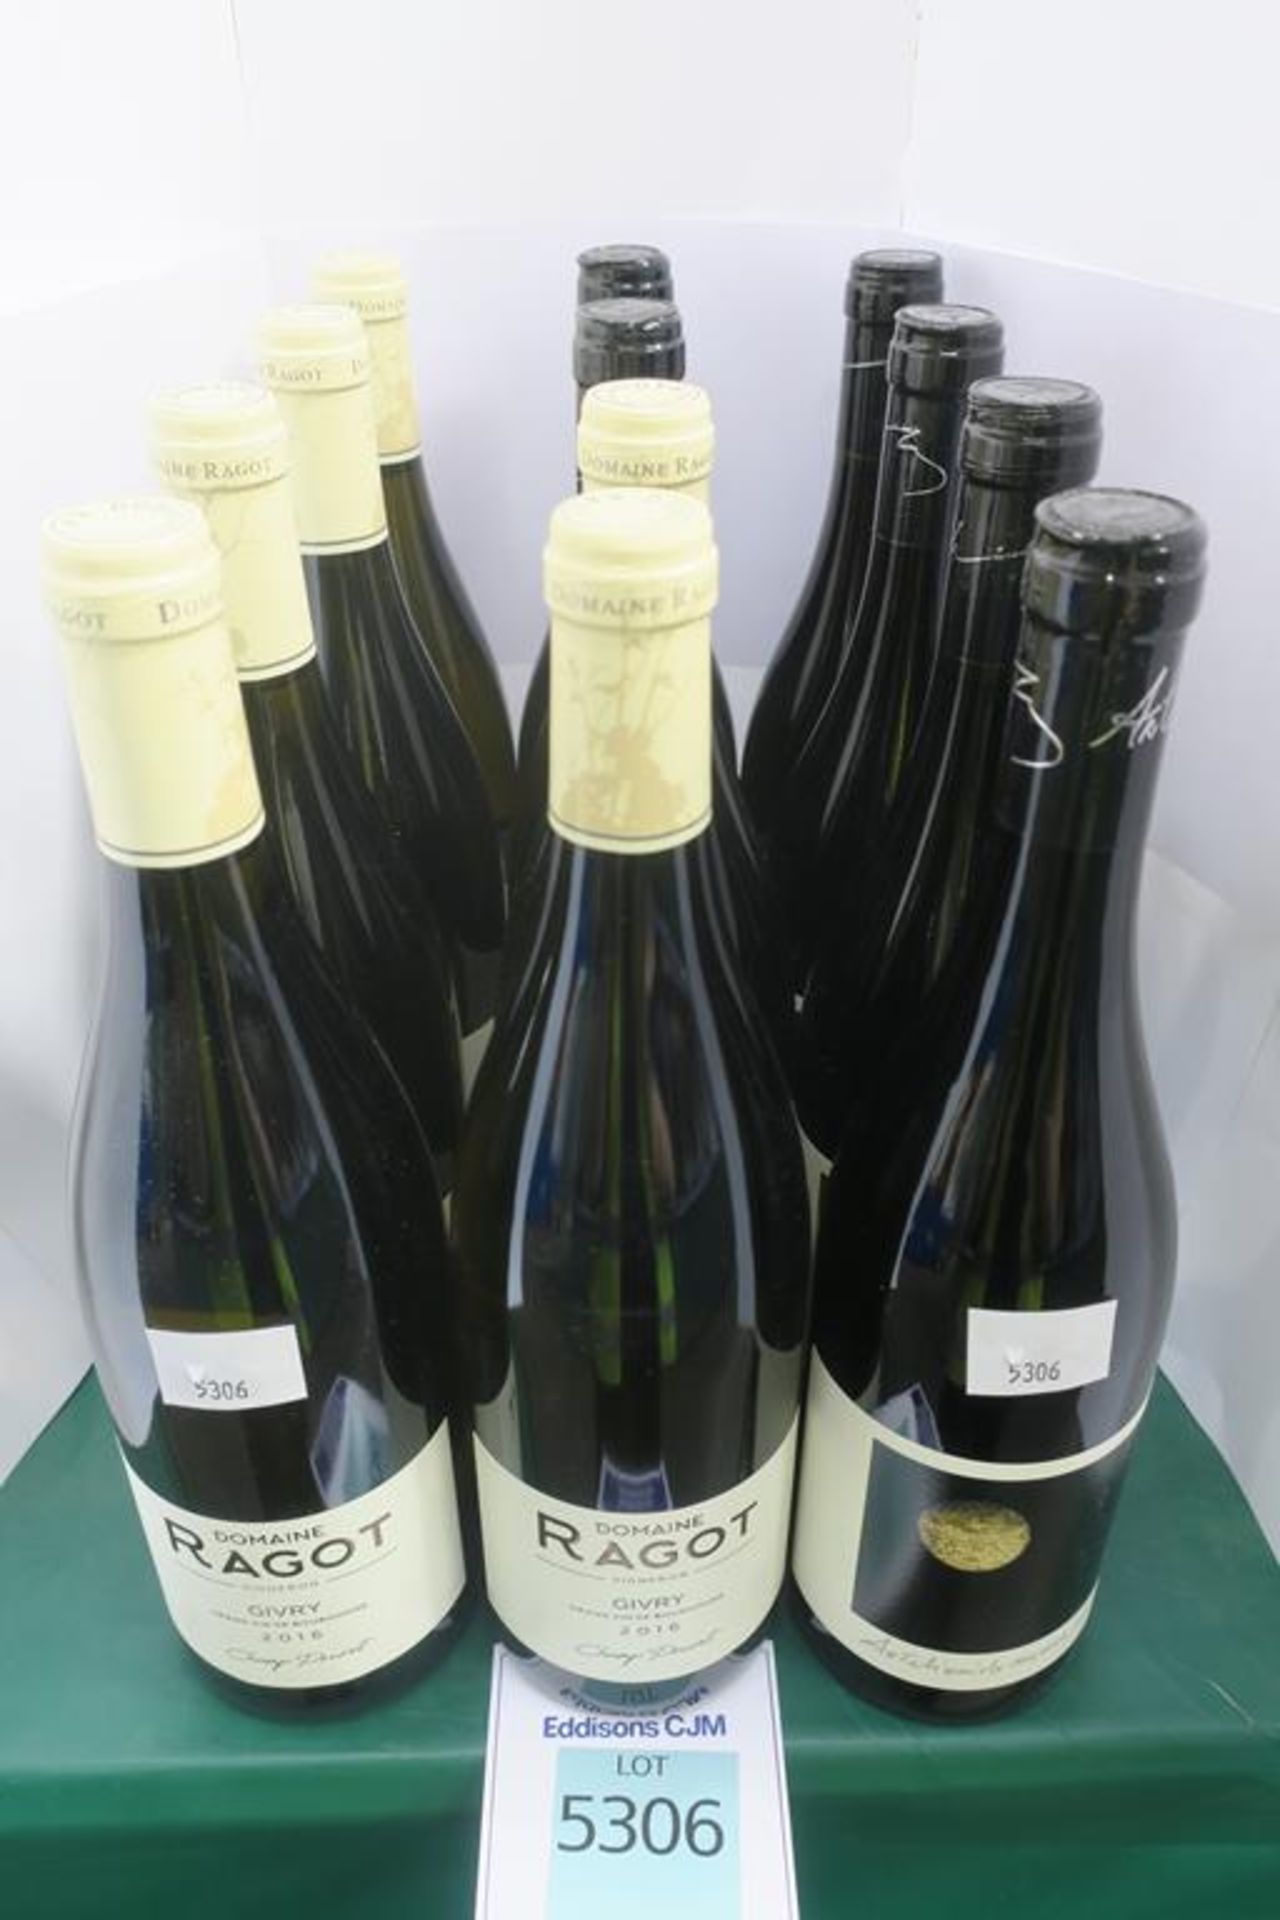 Domaine Ragot Givry and Monte Chiaro Arteliquida Wine